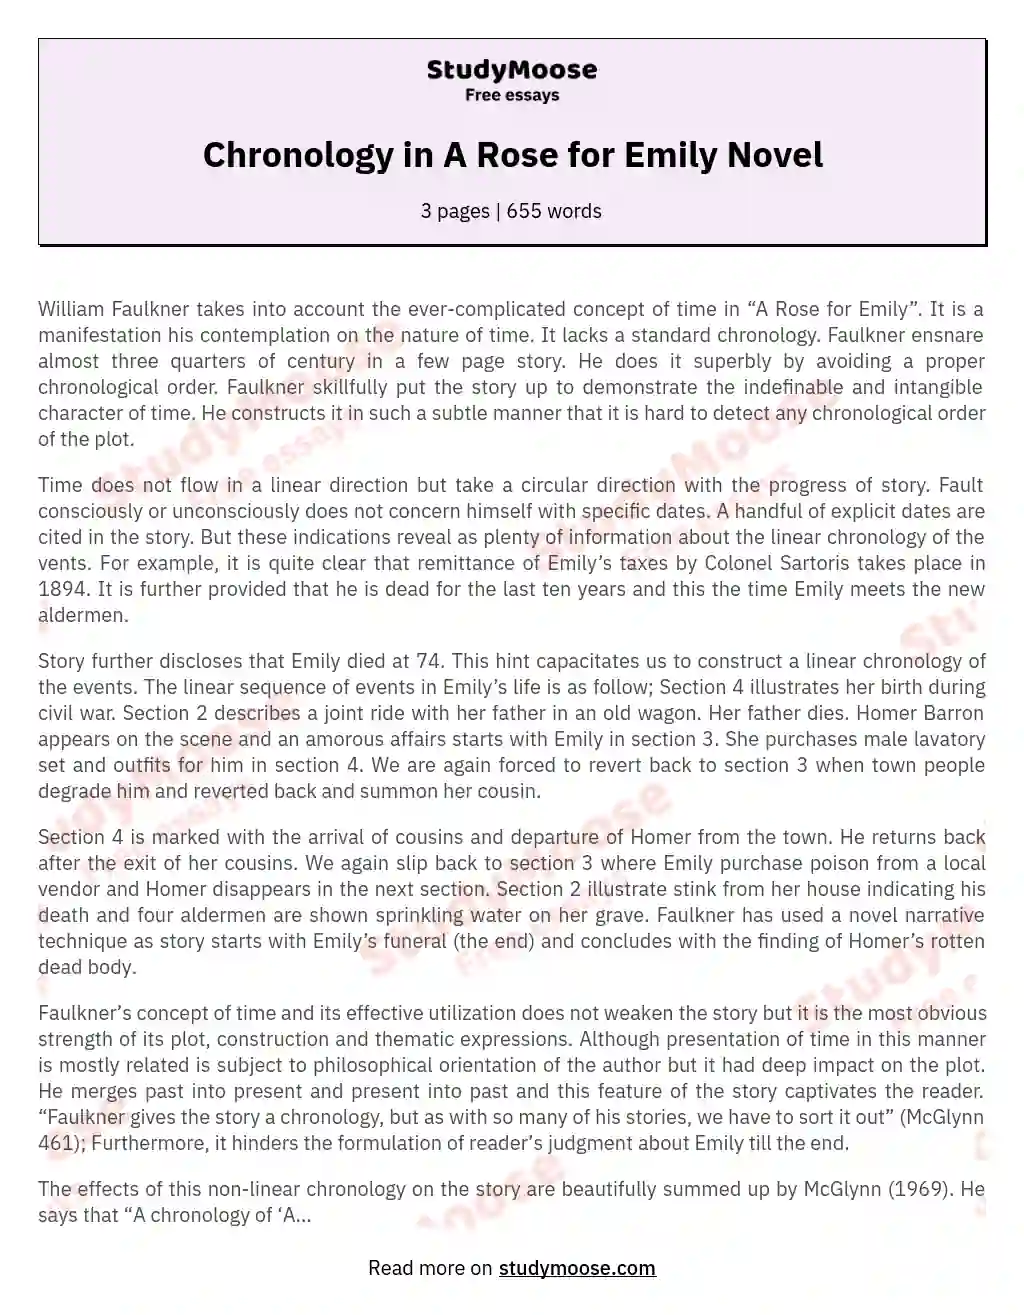 Chronology in A Rose for Emily Novel essay